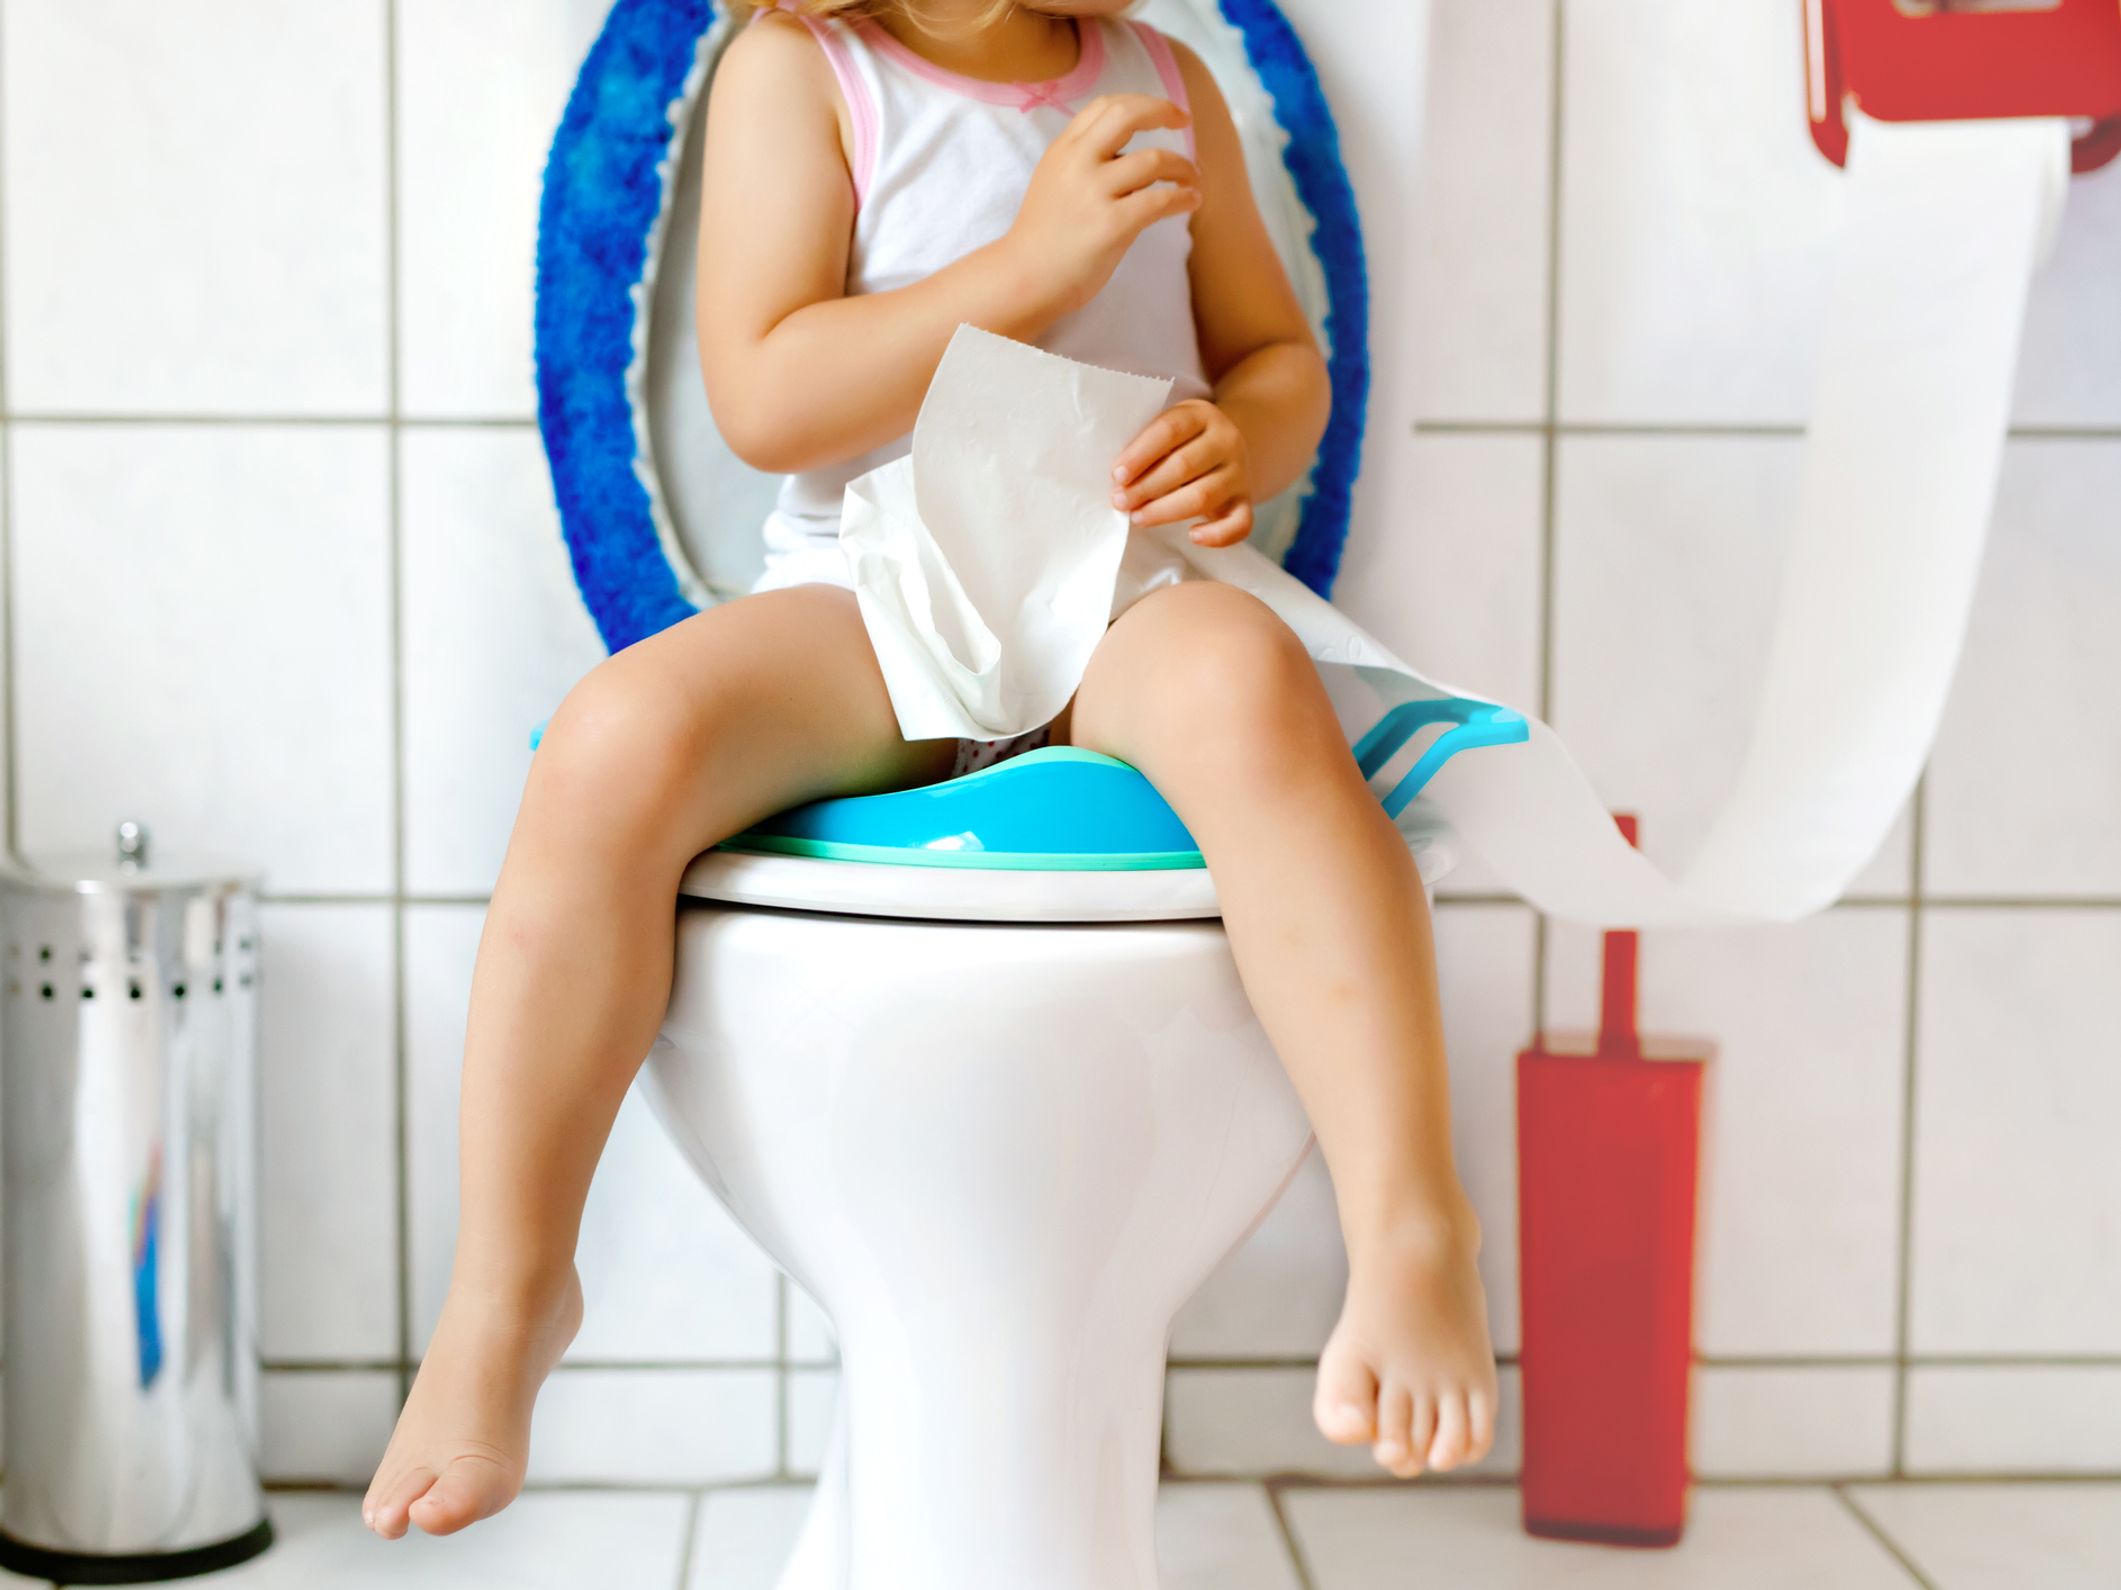 Réducteur de toilette : notre sélection des modèles pour bébé